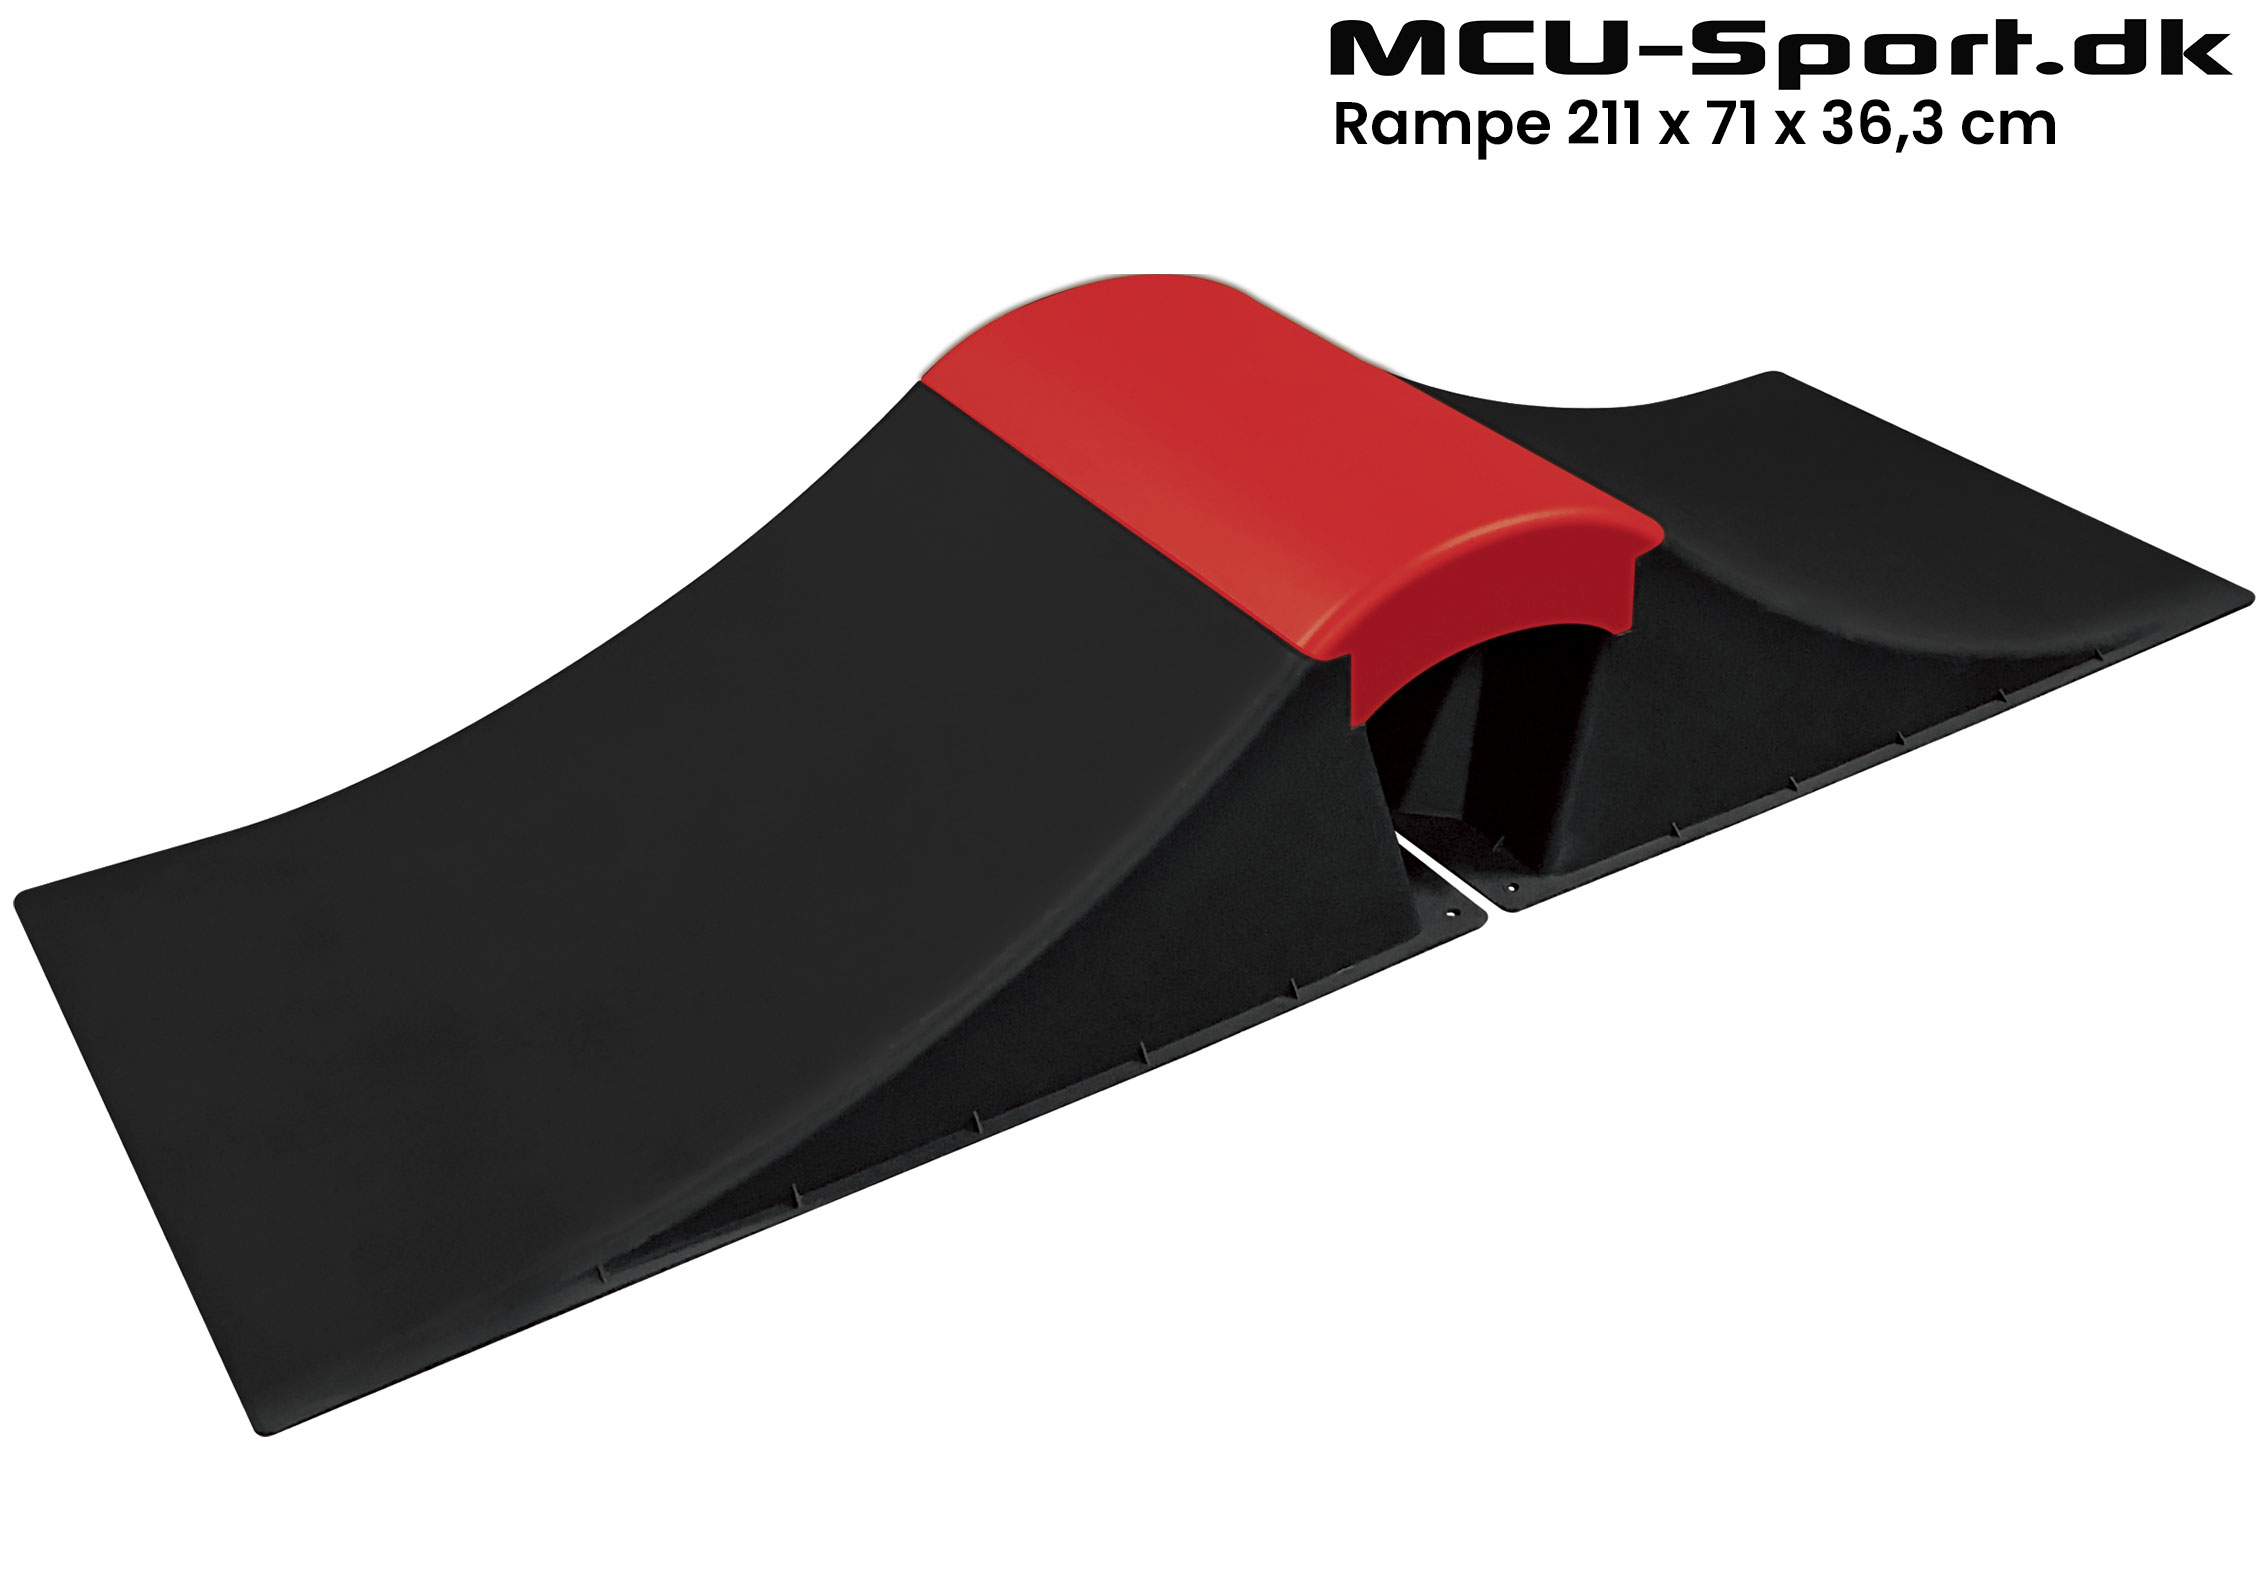 Billede af MCU-Sport Skate Wave Rampe sæt 211 x 71 x 36,3 cm